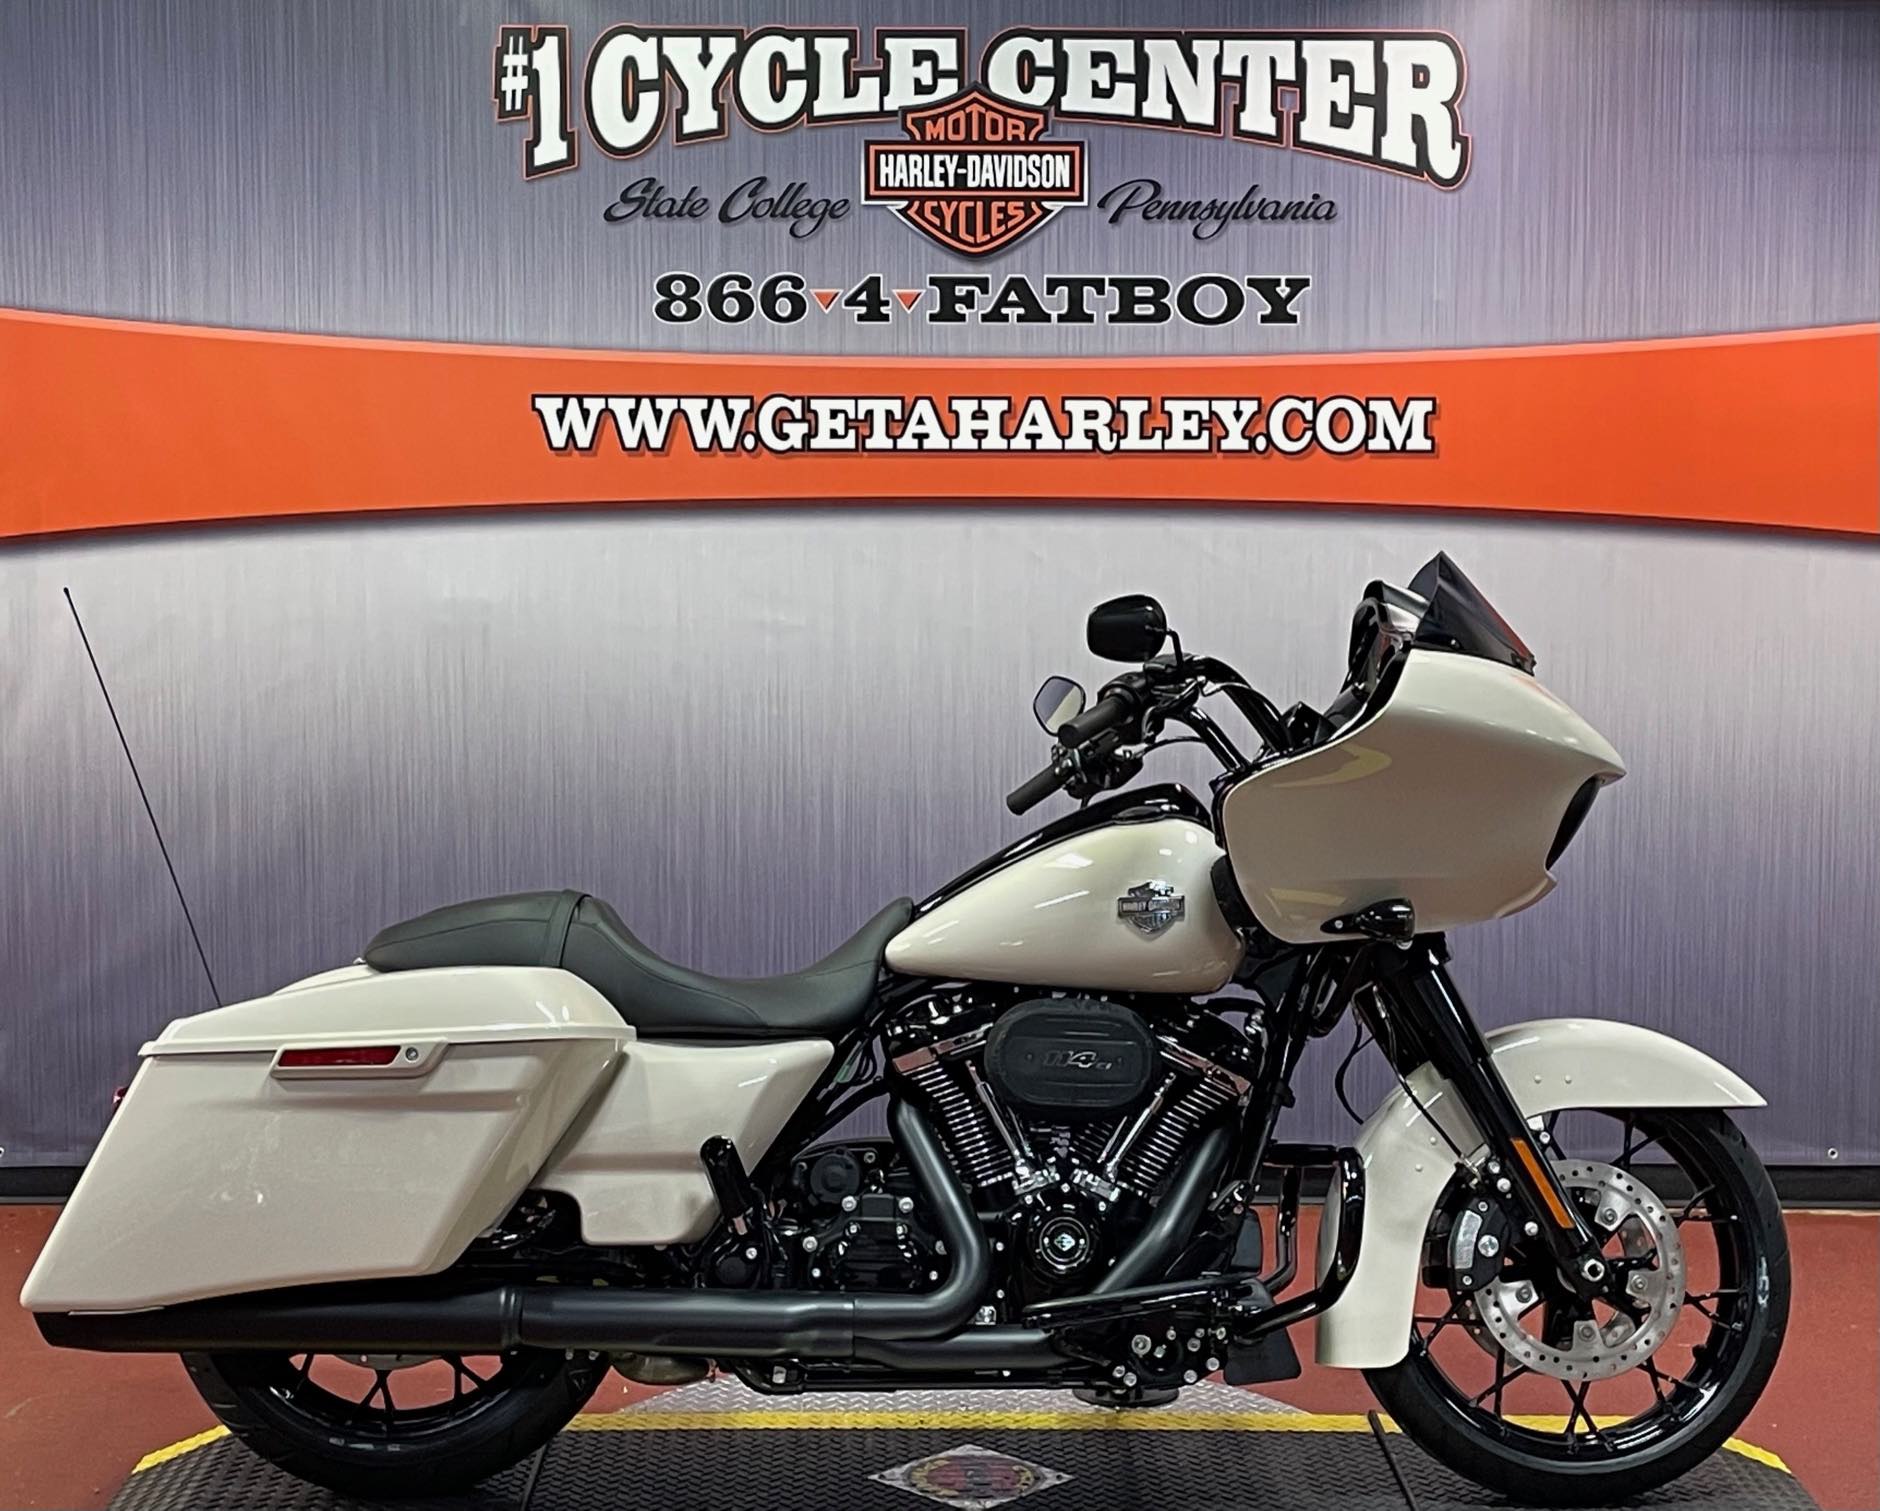 2022 Harley-Davidson Road Glide Special Road Glide Special at #1 Cycle Center Harley-Davidson